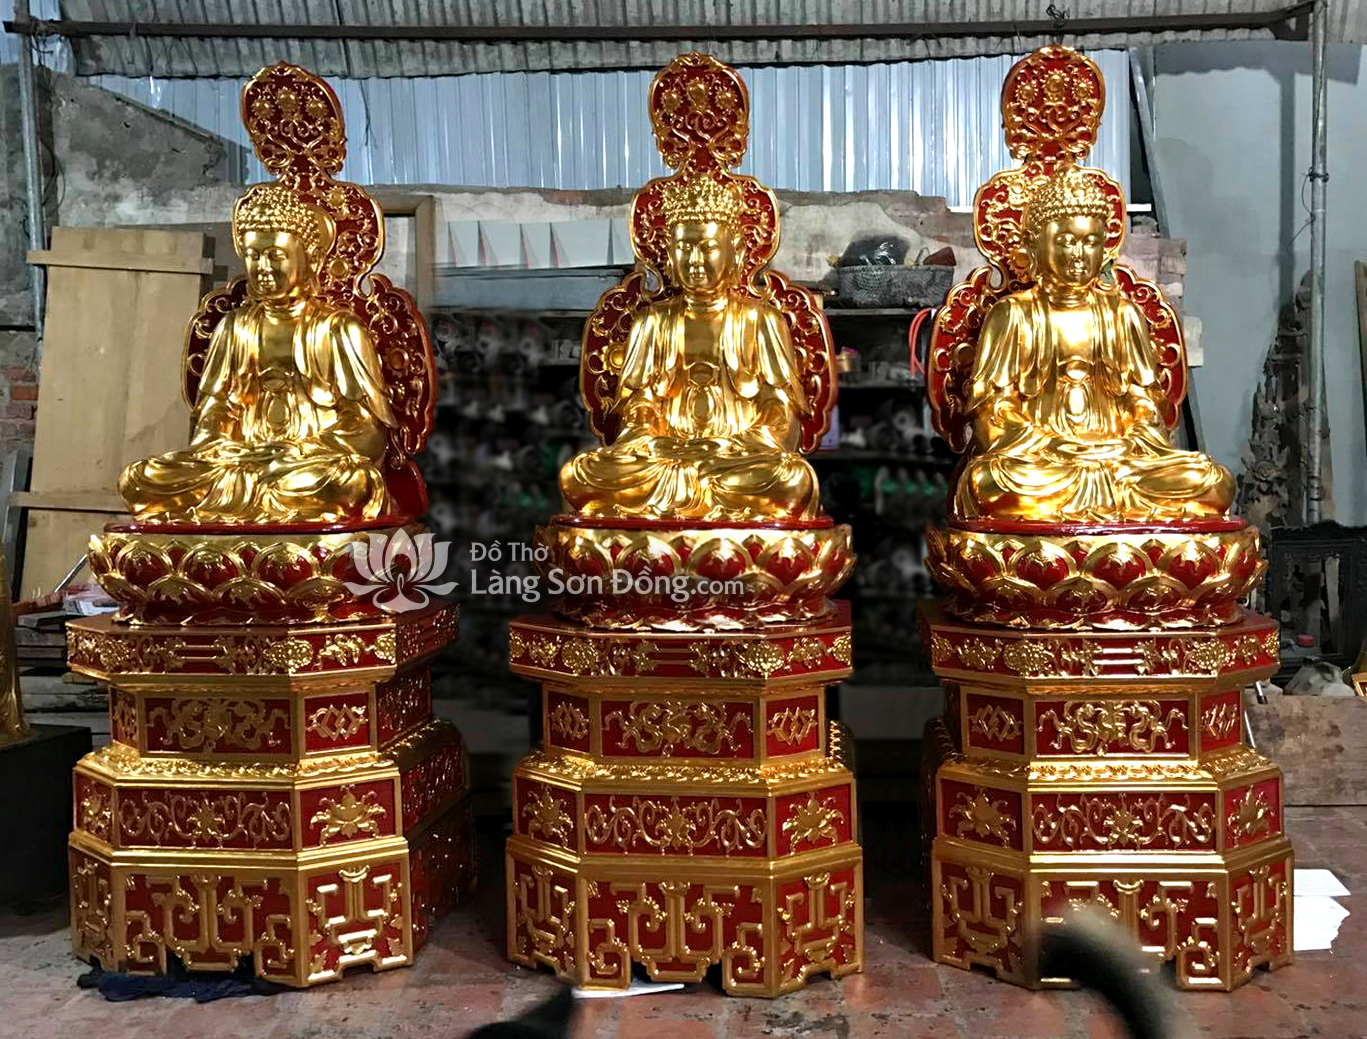 Tượng Tam Thế Phật sơn son thếp vàng sử dụng chất liệu sơn nào?